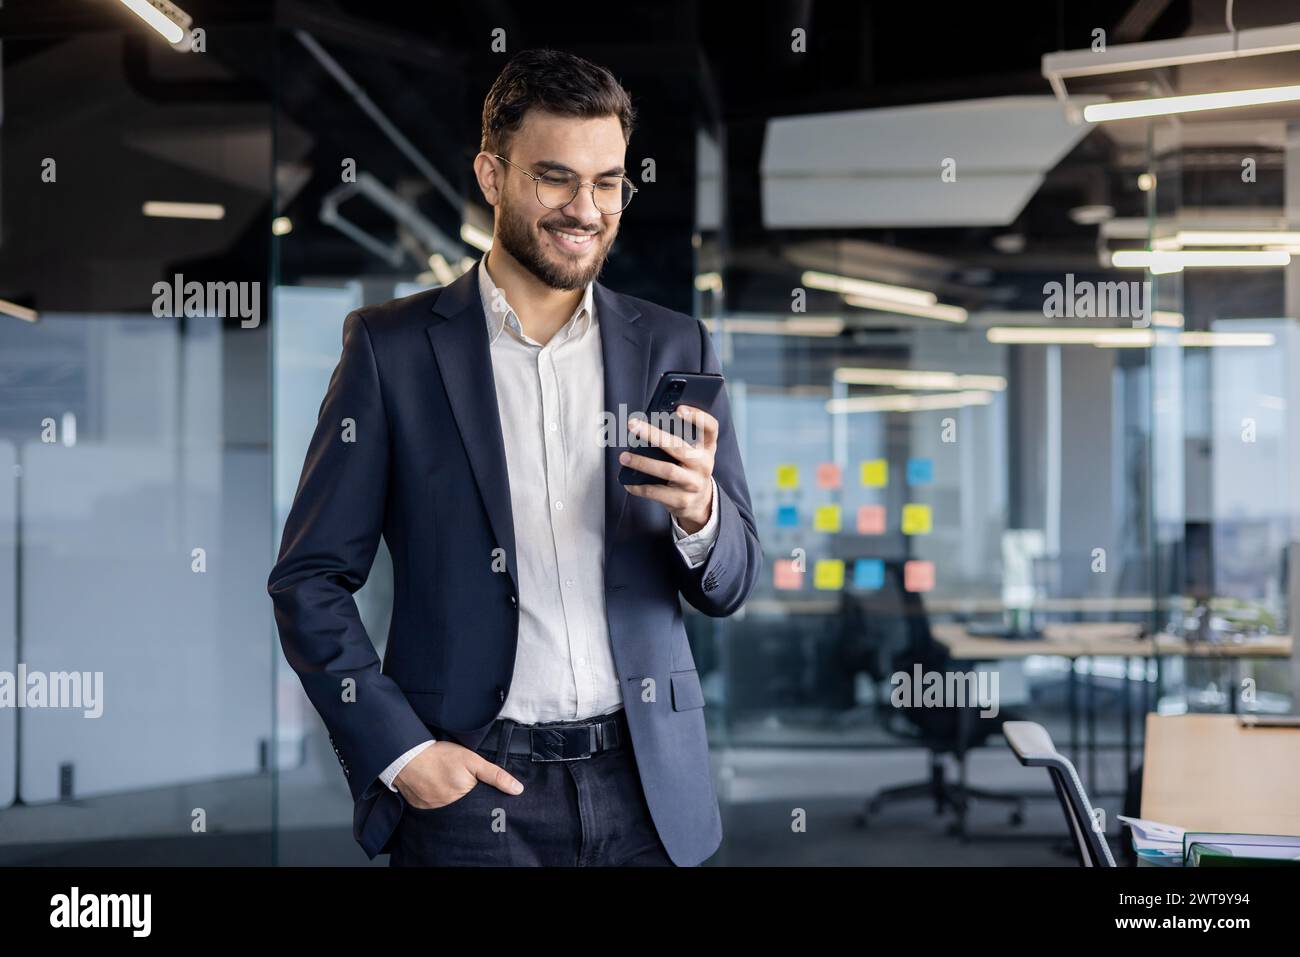 Un jeune homme d'affaires joyeux en costume interagit avec son smartphone dans un cadre de bureau lumineux et contemporain. Banque D'Images